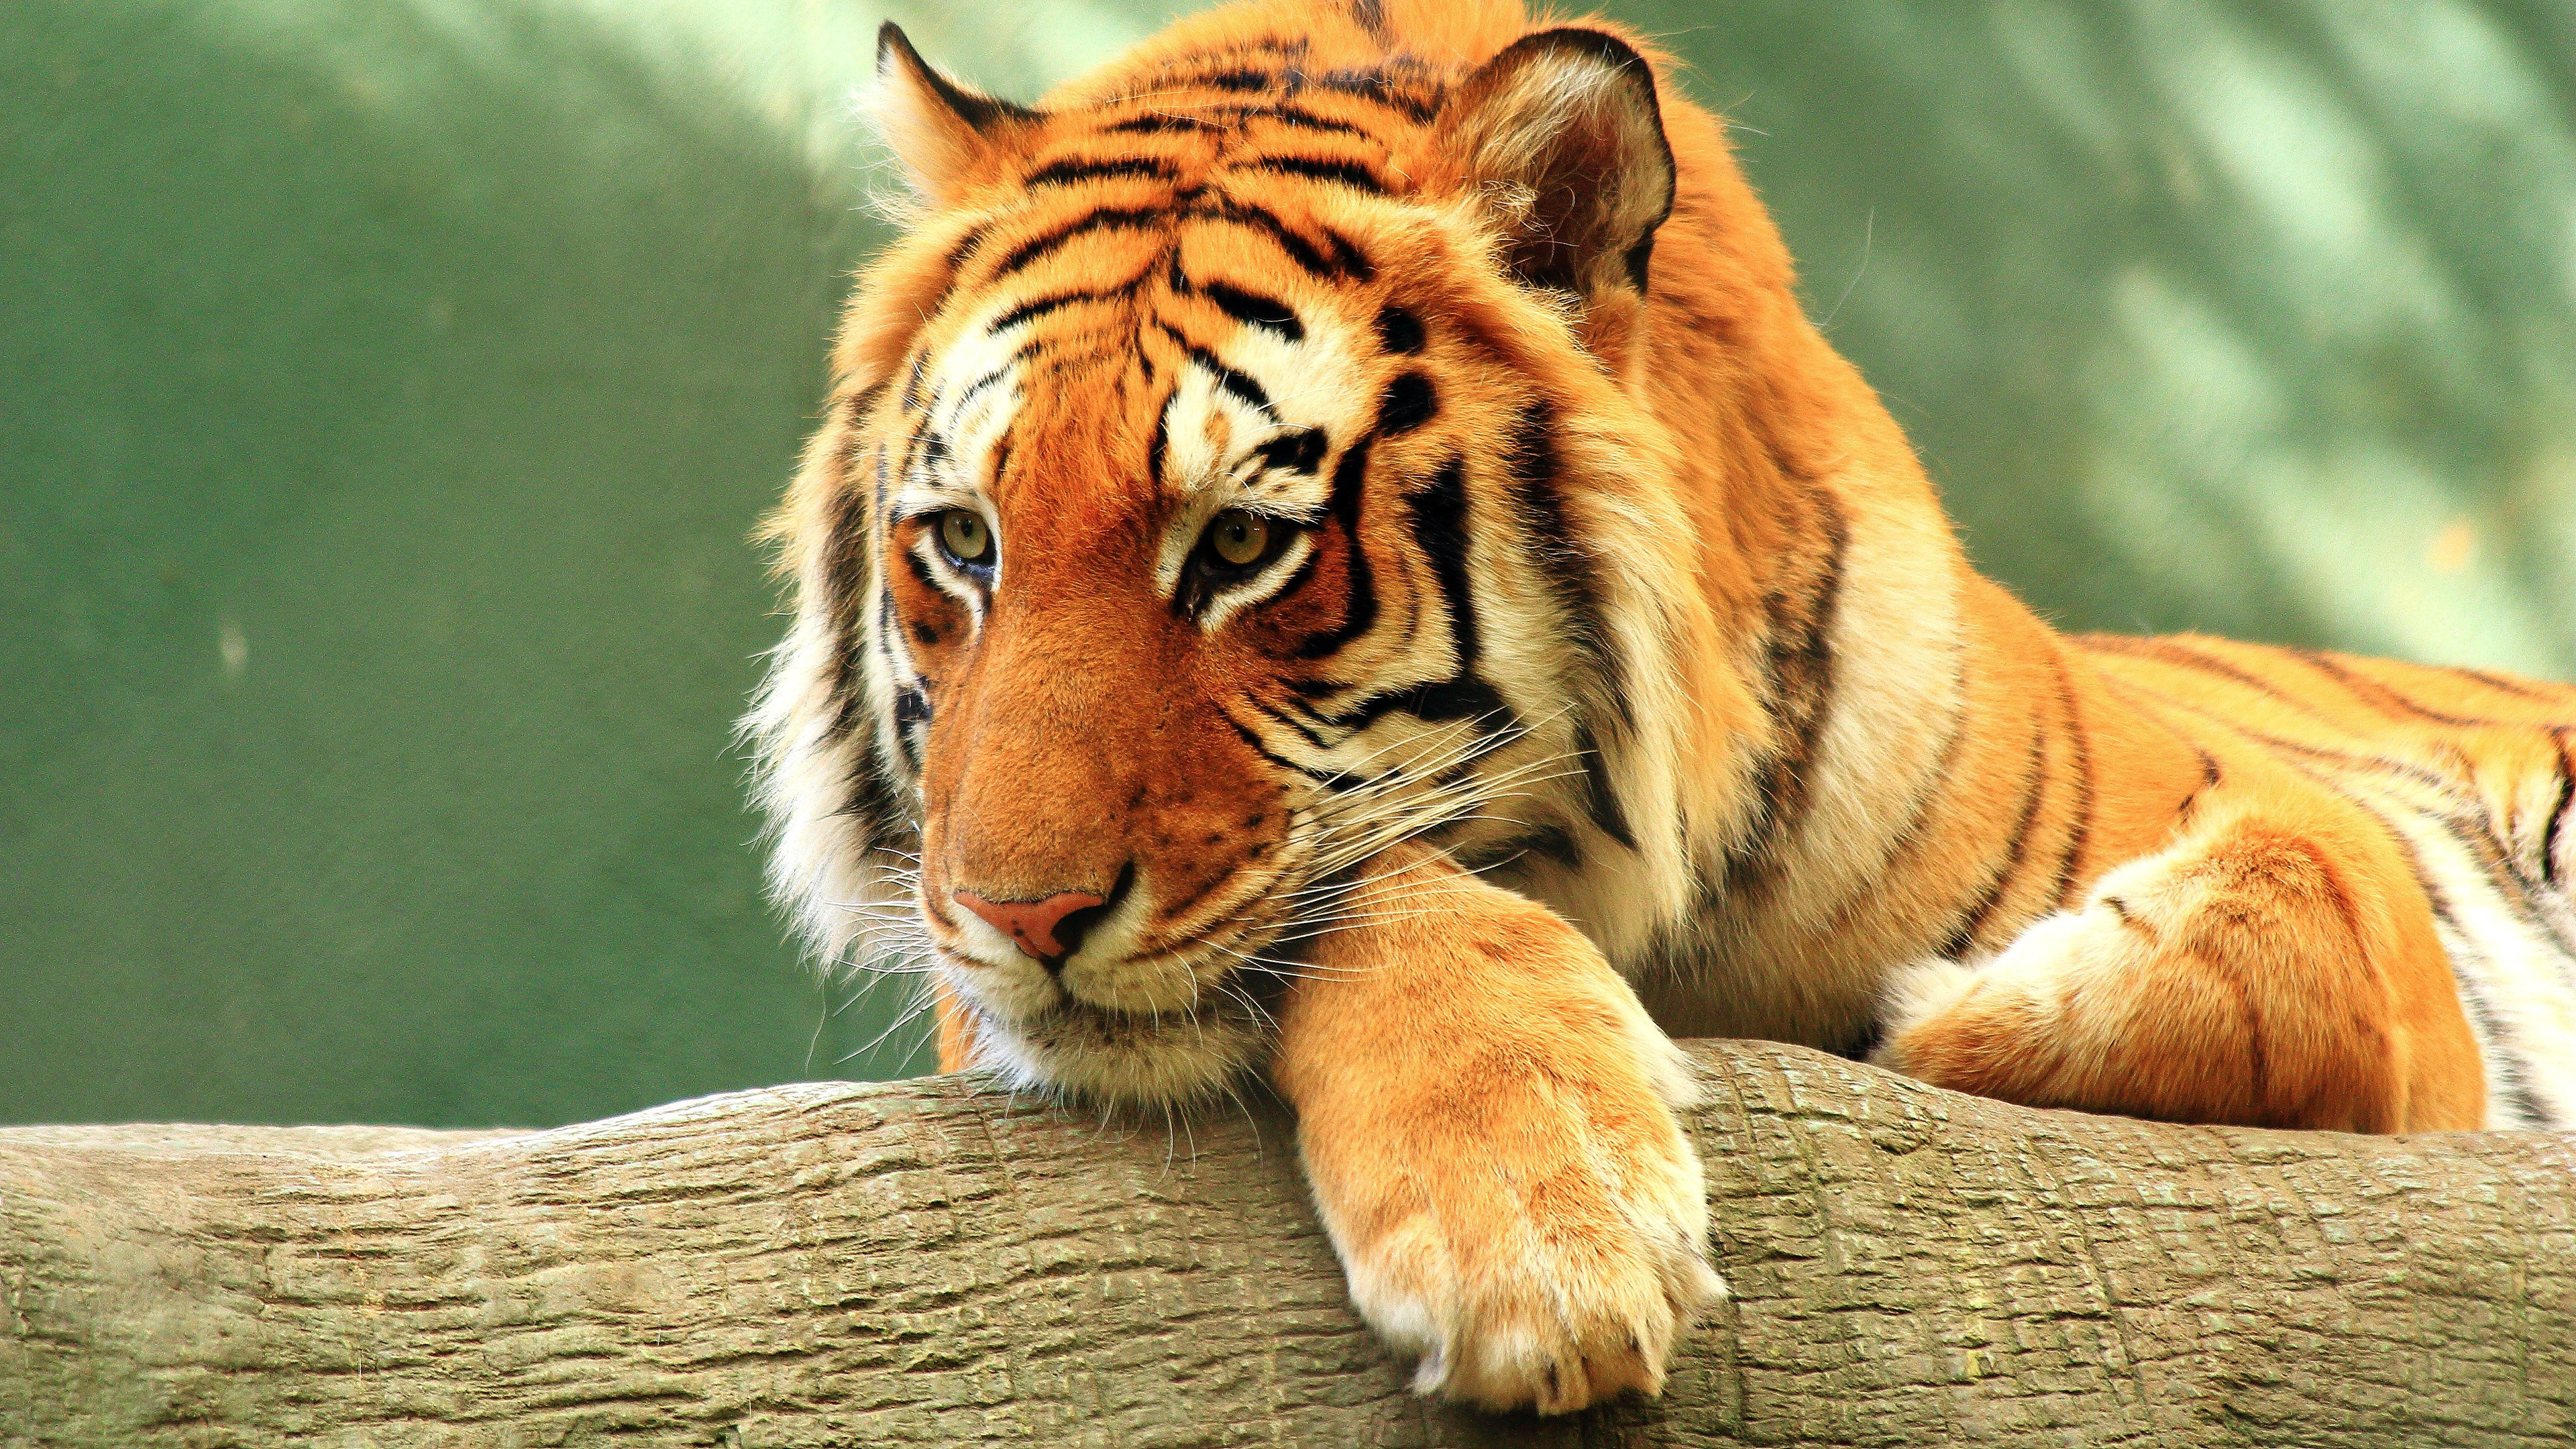 孟加拉虎, 金虎, 老虎, 野生动物, 陆地动物 壁纸 3840x2160 允许